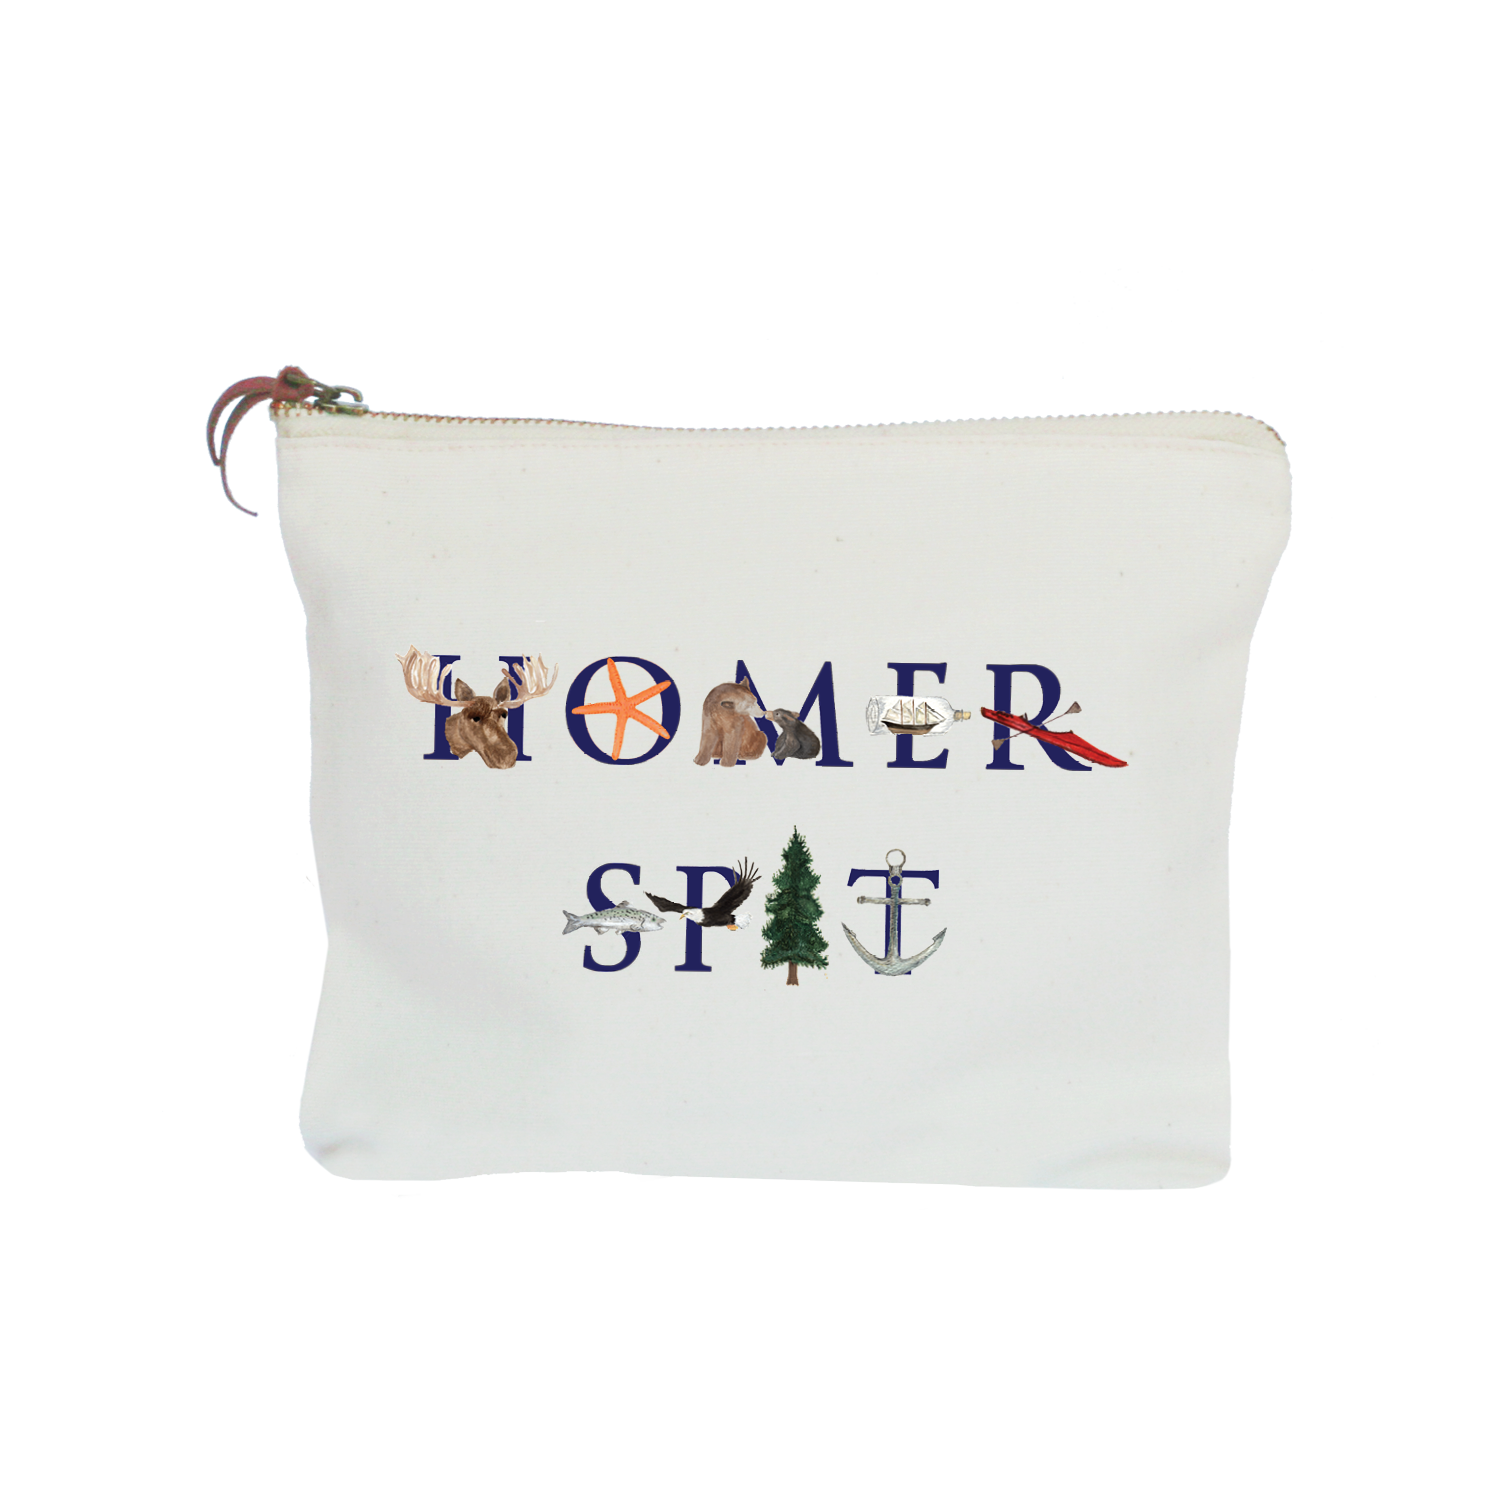 homer spit zipper pouch